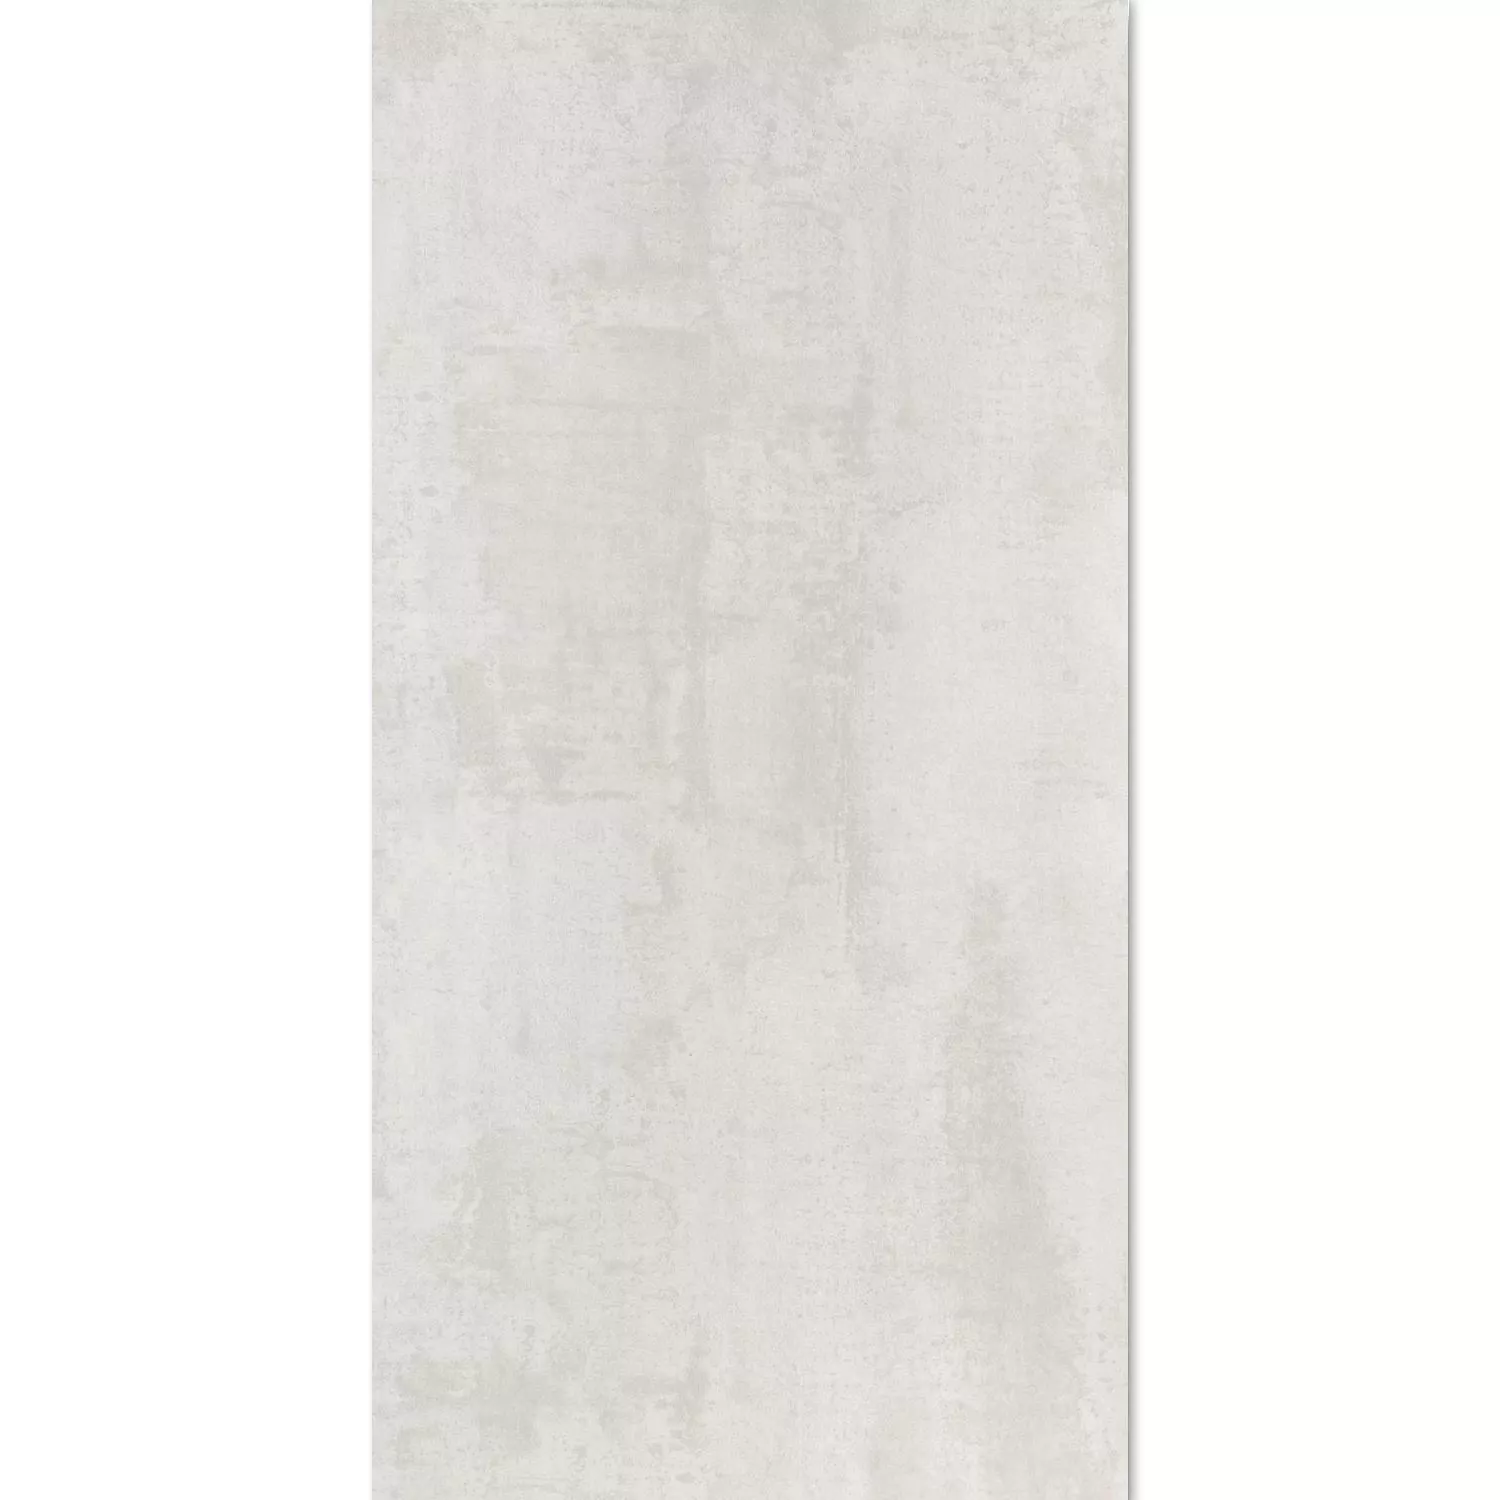 Πλακάκια Δαπέδου Herion Μεταλλική Εμφάνιση Lappato Blanco 45x90cm